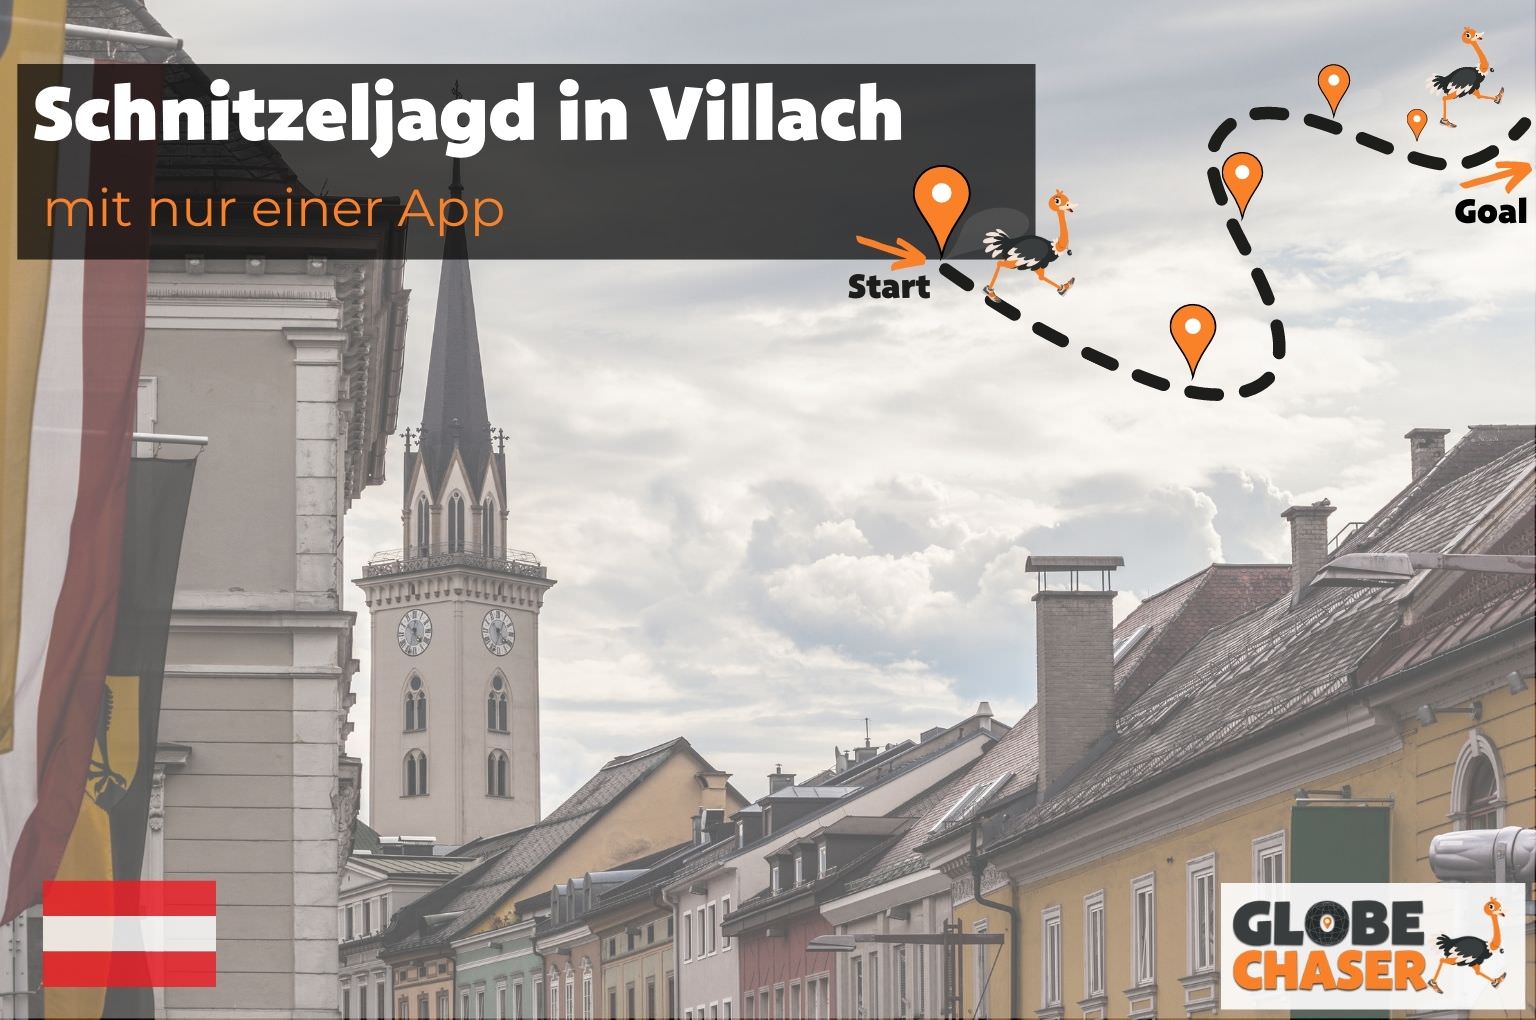 Schnitzeljagd in Villach mit App - Globe Chaser Erlebnisse Austria